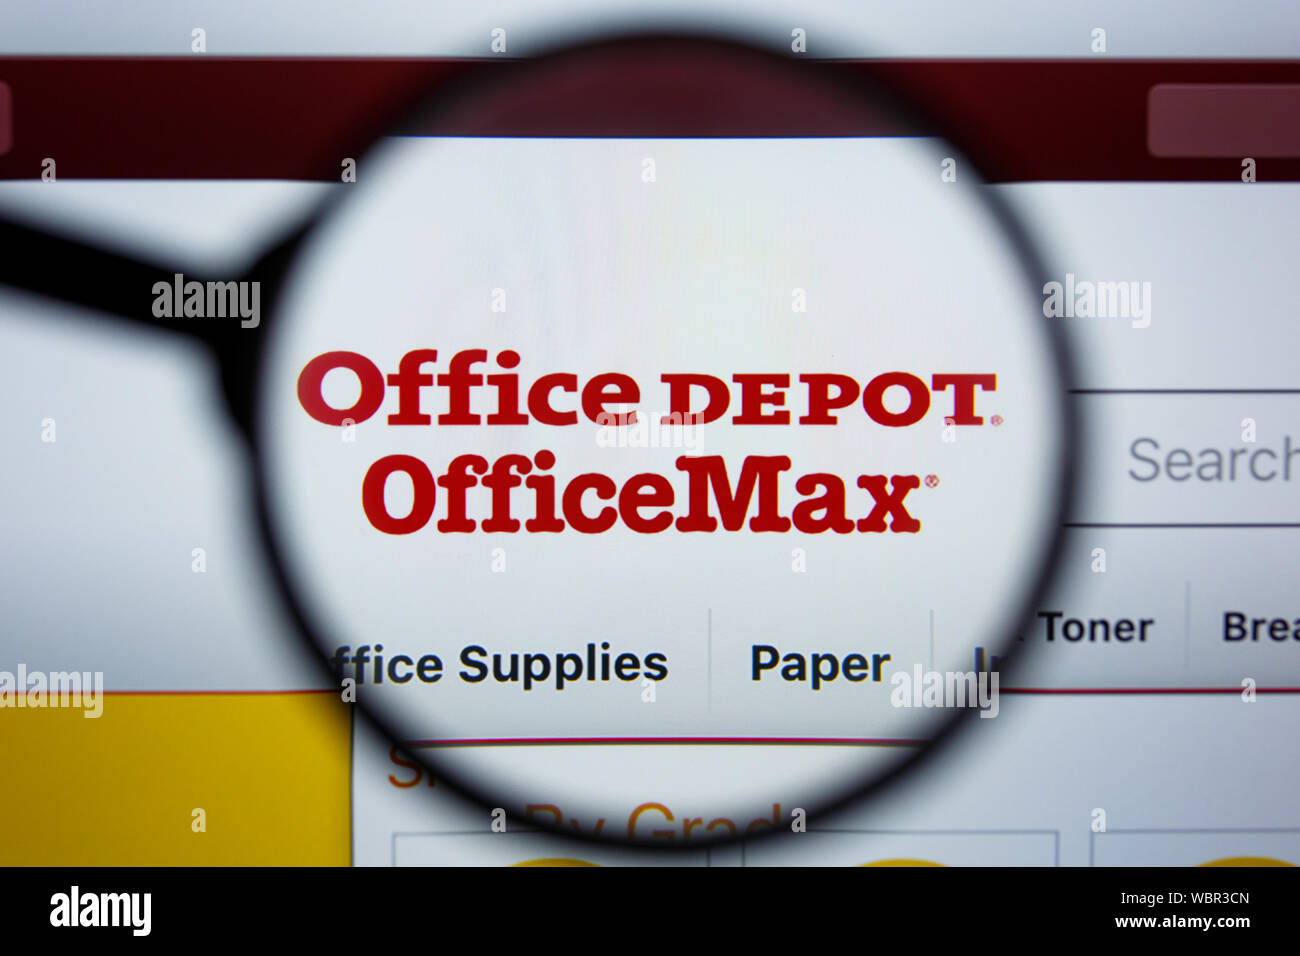 Los Angeles, California, . - 21 Jule 2019: Editorial officedepot  ilustrativos de página web. Office Depot Office Max logo visible en  pantalla Fotografía de stock - Alamy